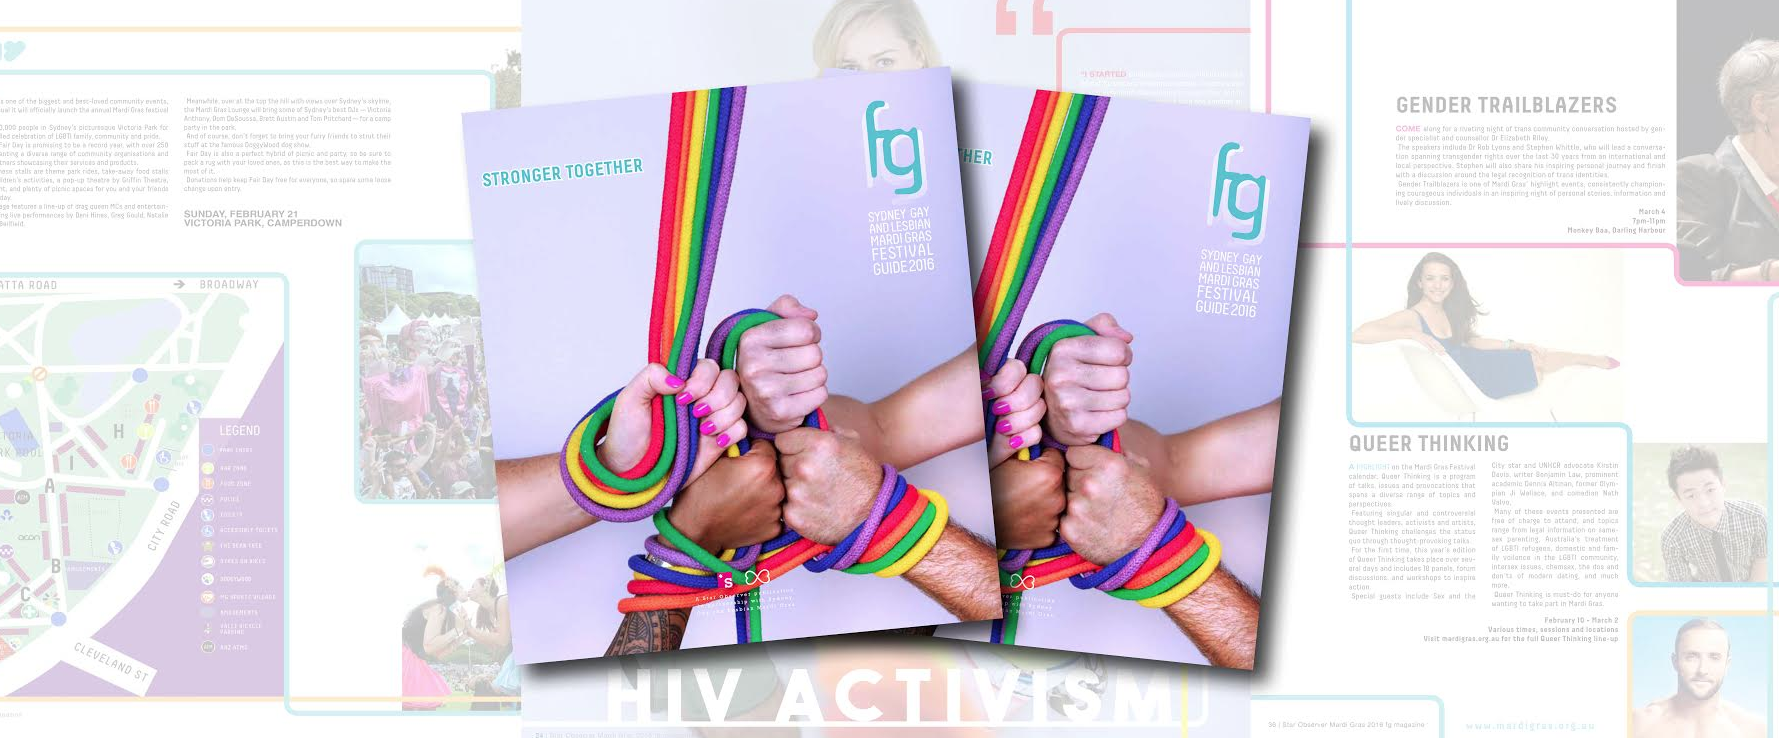 fg 2016: Sydney Gay and Lesbian Mardi Gras festival guide